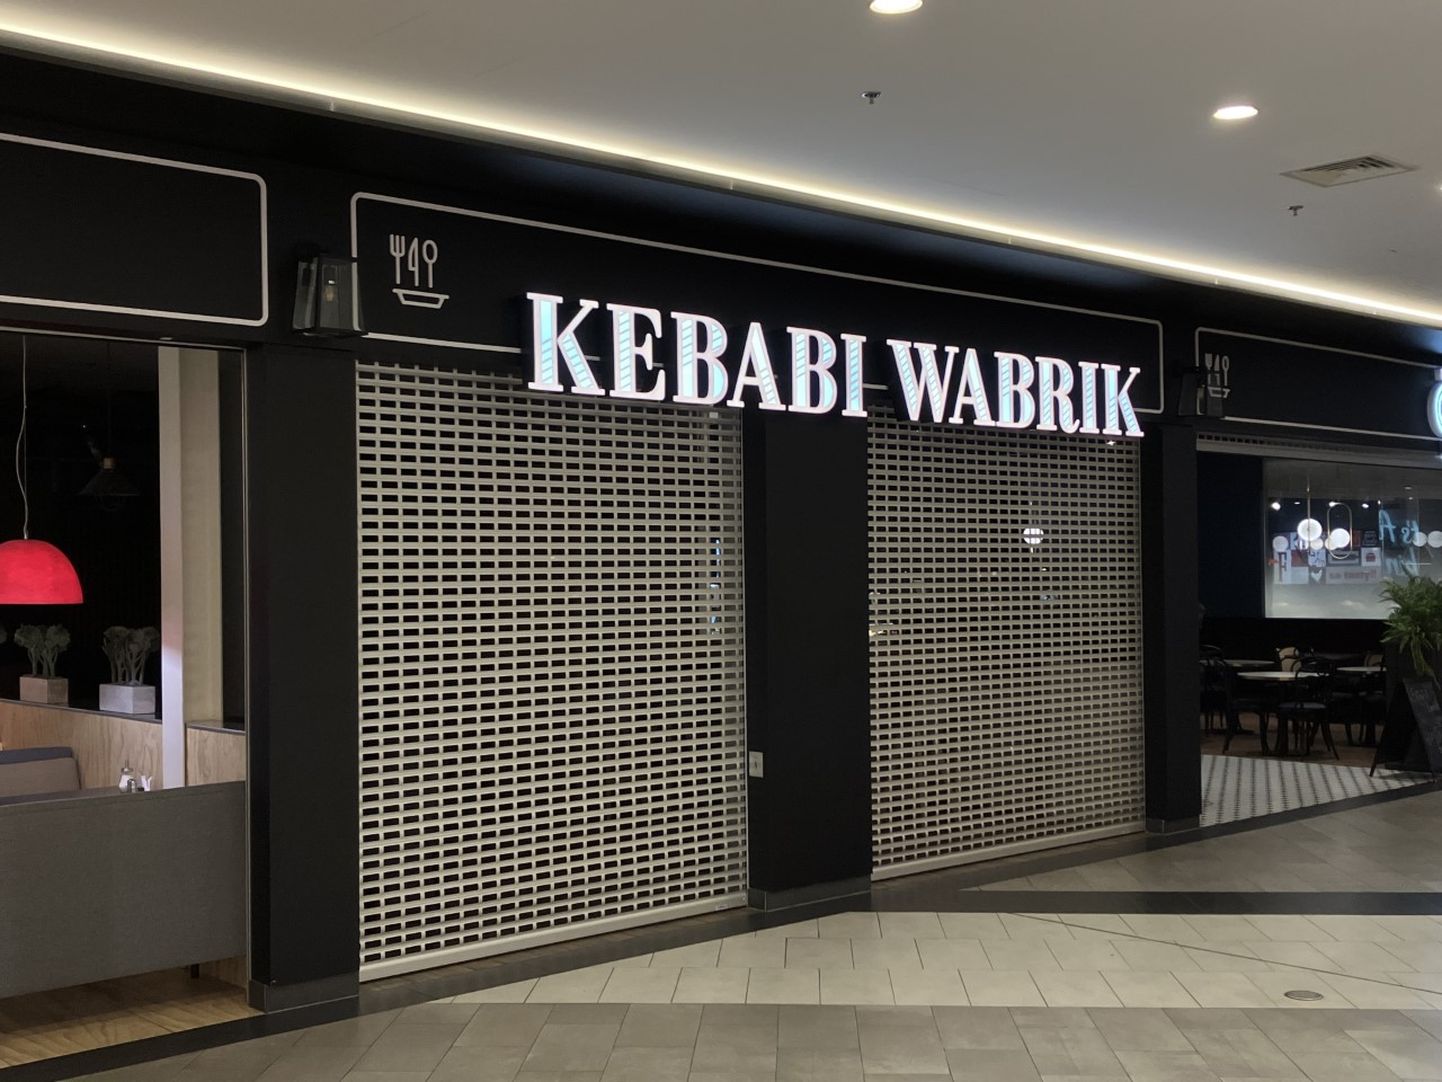 Kebabi Wabrik sulges Kristiine keskuses uksed.